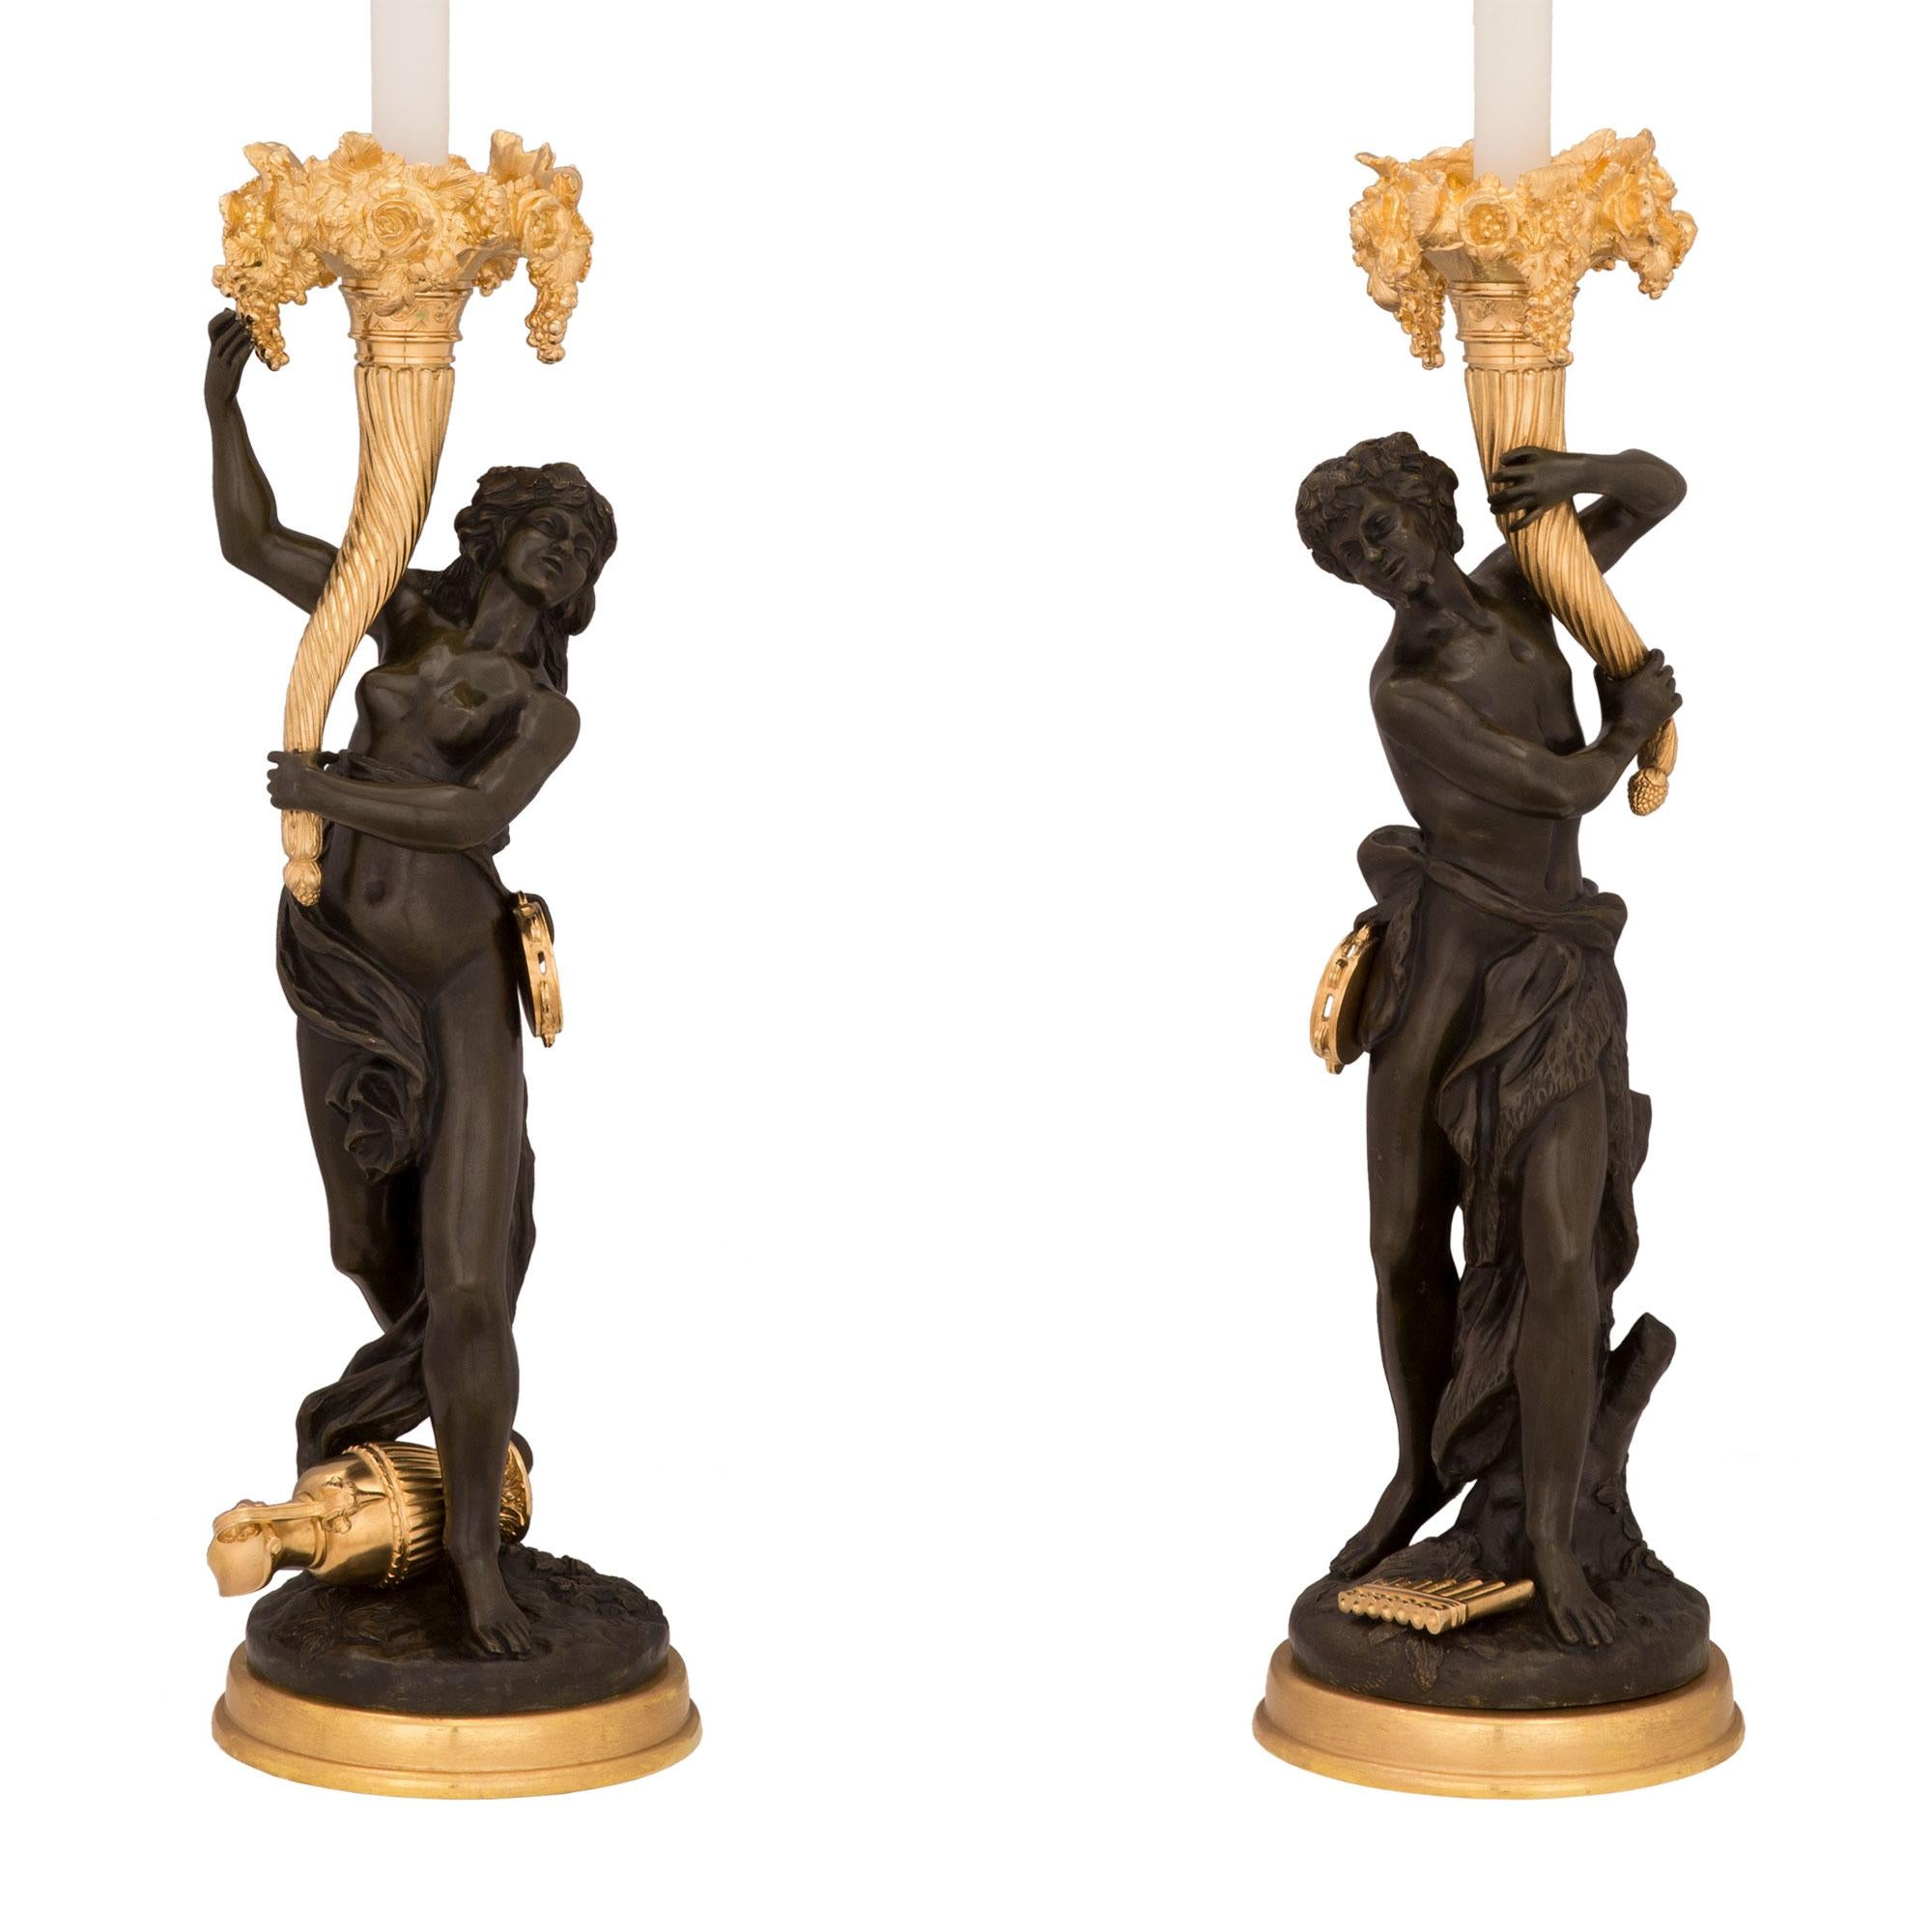 Une belle paire de lampes françaises du 19ème siècle, de style Louis XVI, en bronze doré et patiné, signées Clodion. Chaque lampe est surélevée par une base en bronze doré de qualité, avec un motif en relief merveilleusement exécuté. Le bronze de